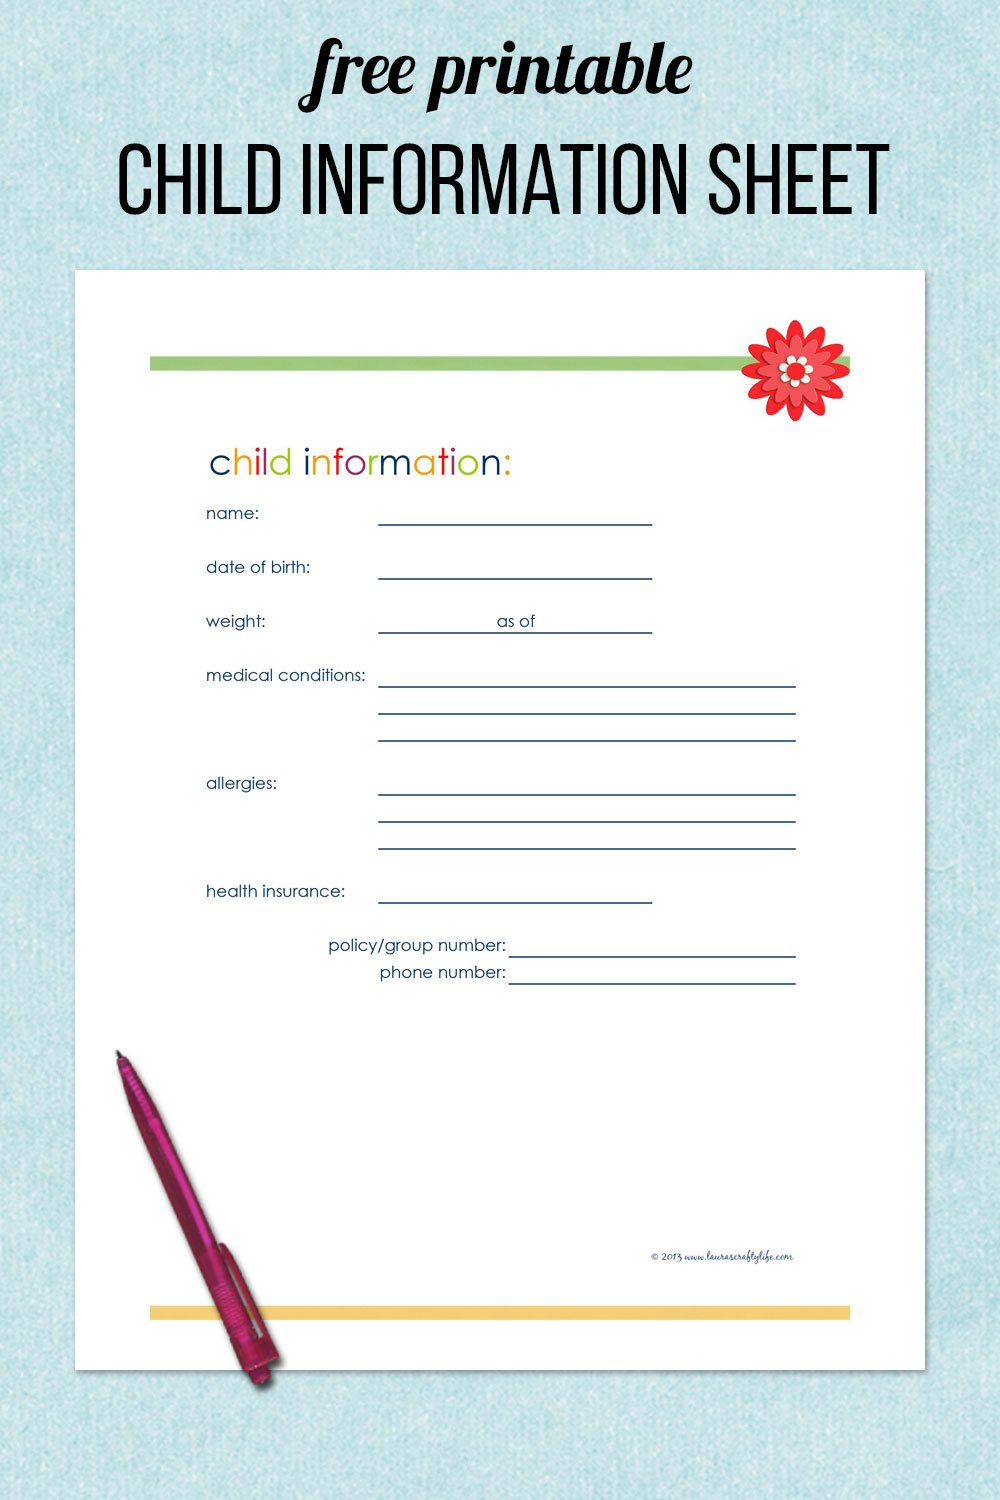 free printable child information sheet